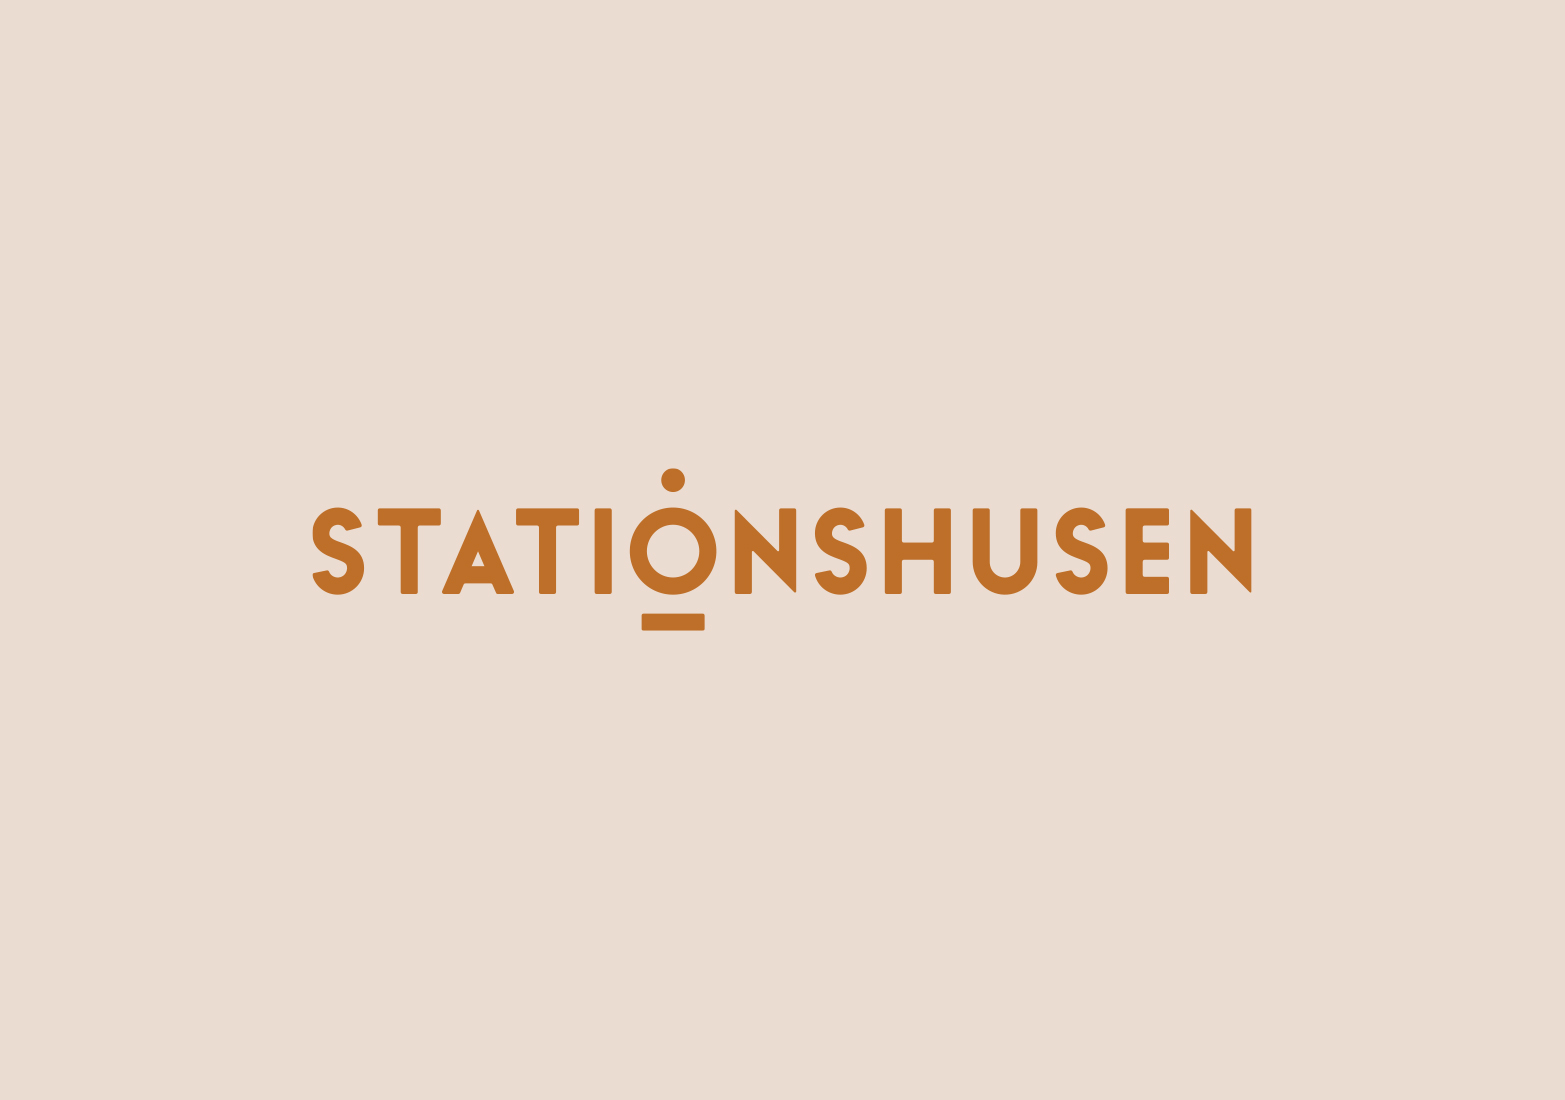 Stationshusen: Branding